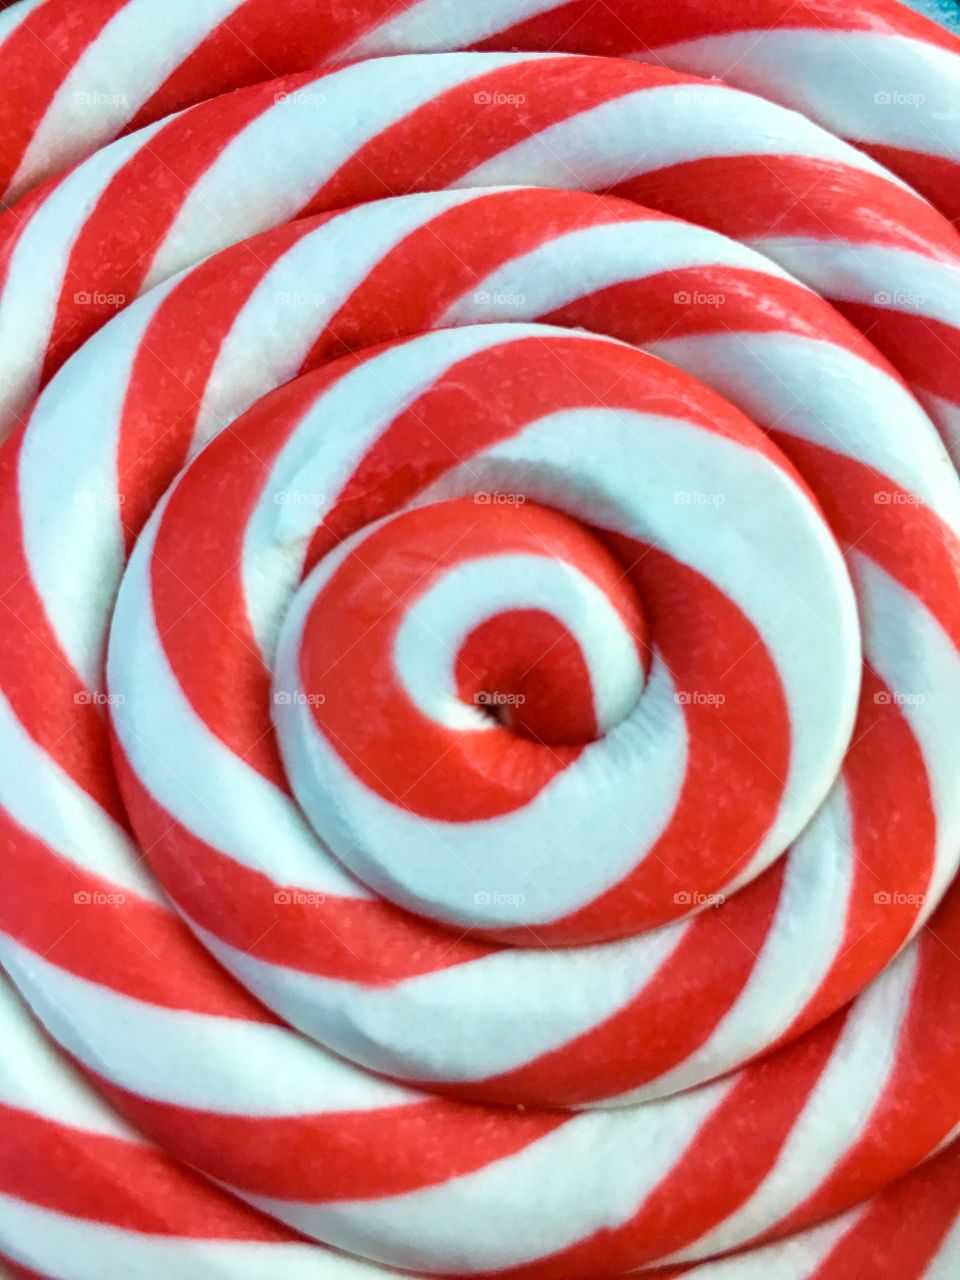 Candy swirl 